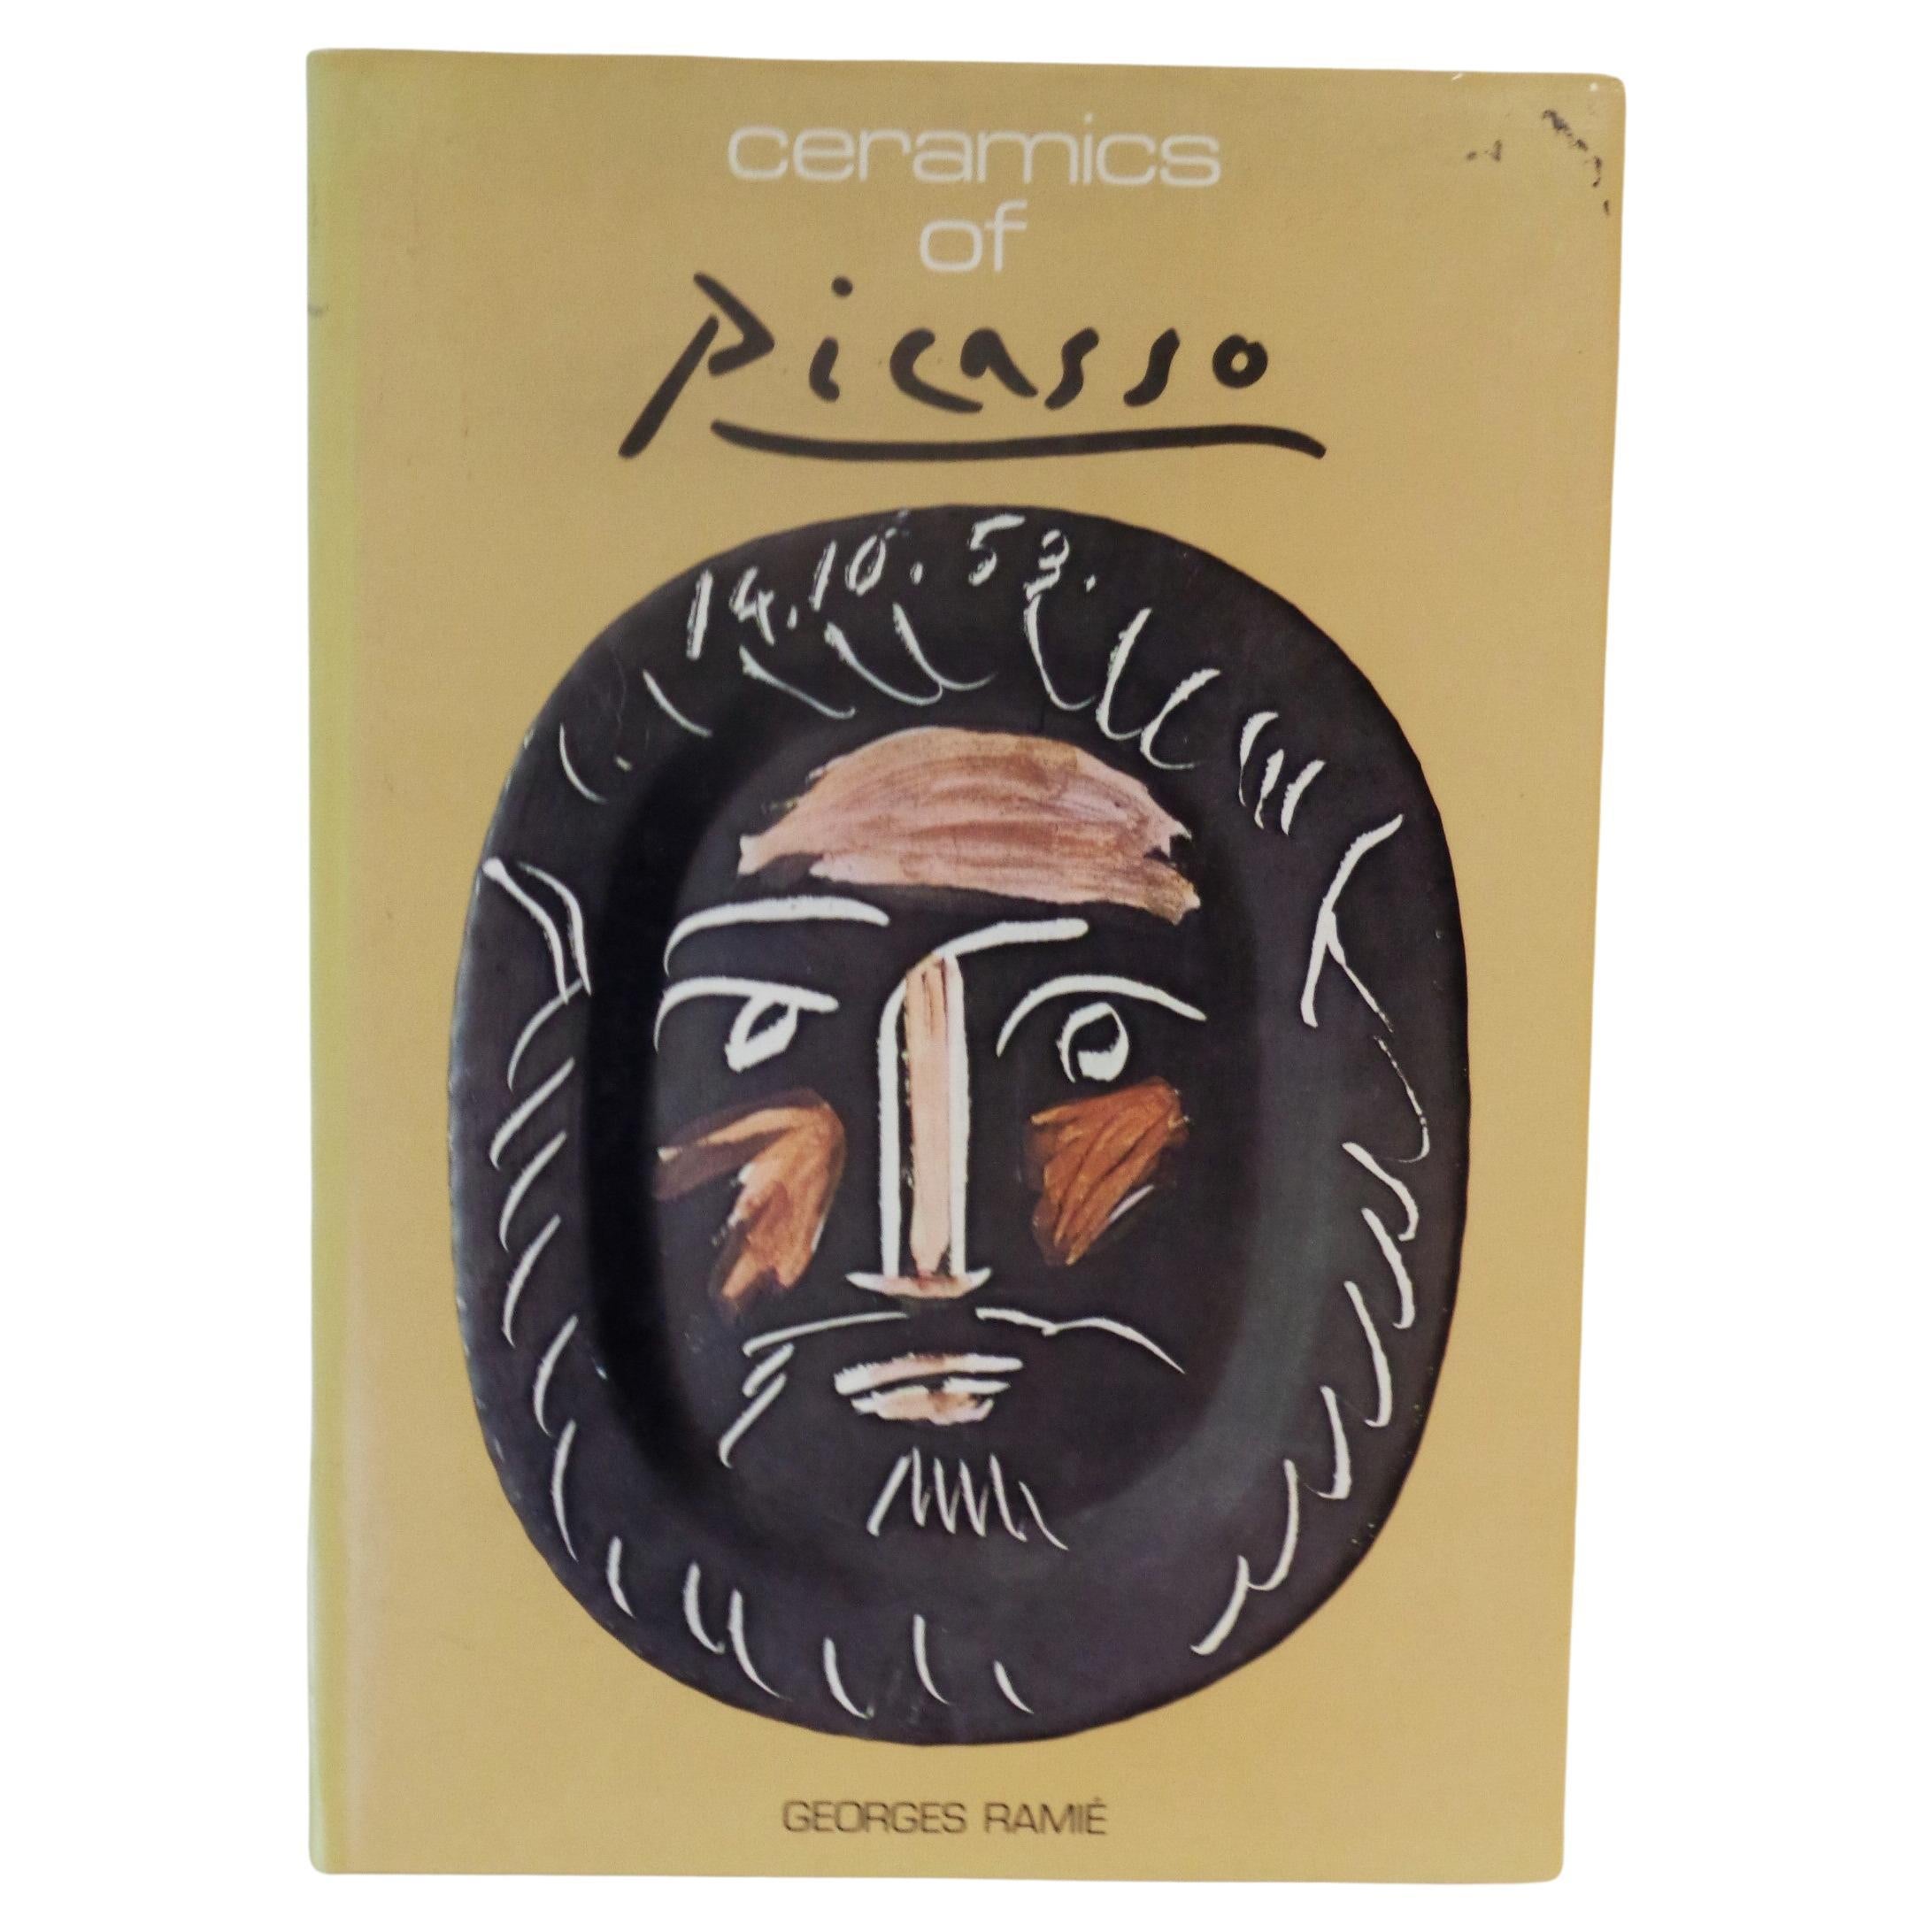 Ceramics of Picasso,  Georges Ramie - 1985 Ediciones Poligrafa, S.A. 